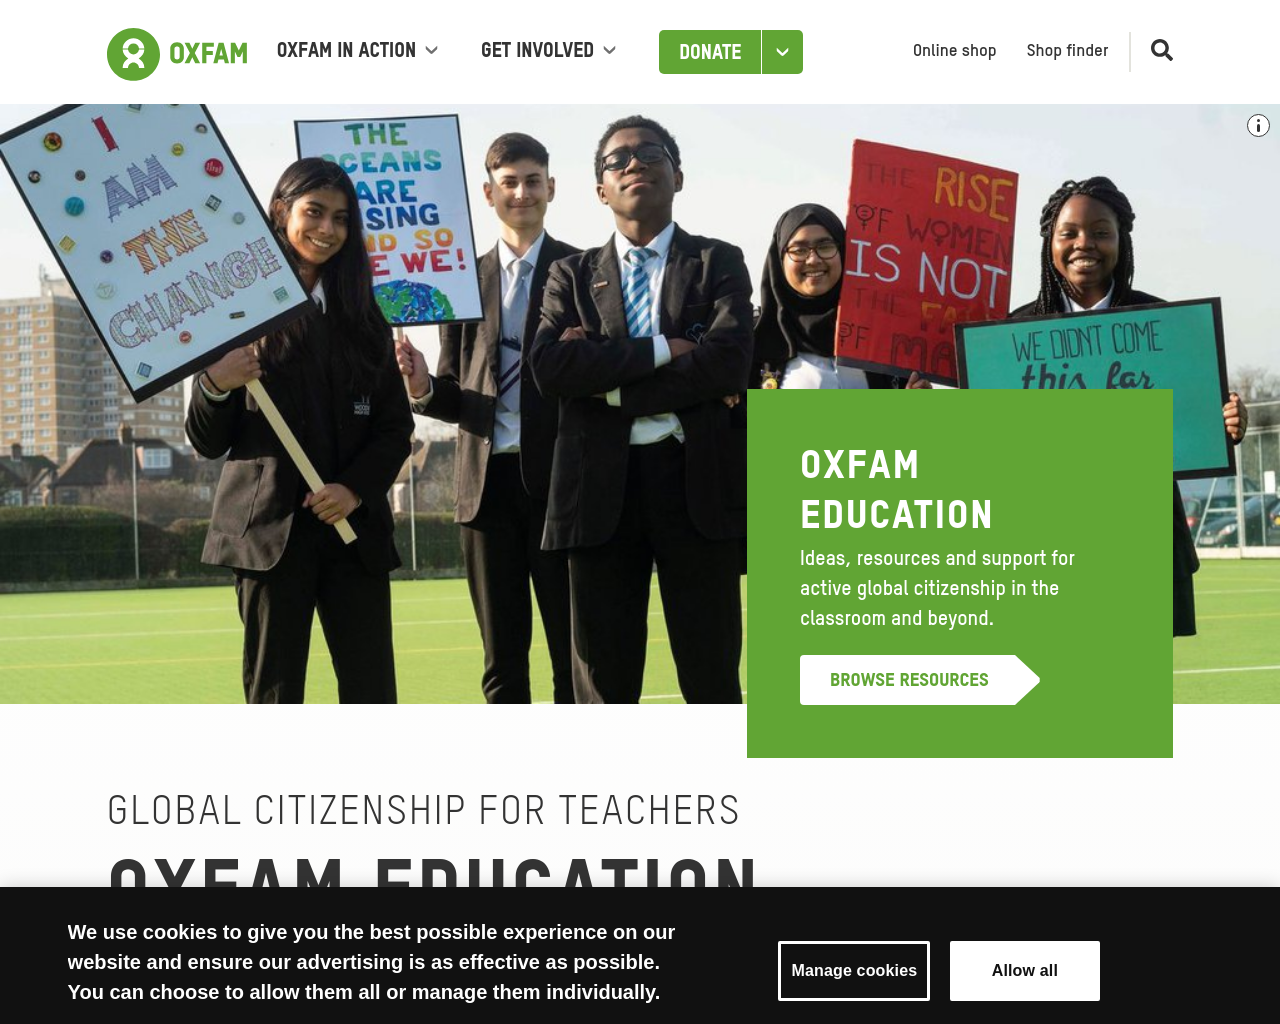 oxfam.org.uk/education